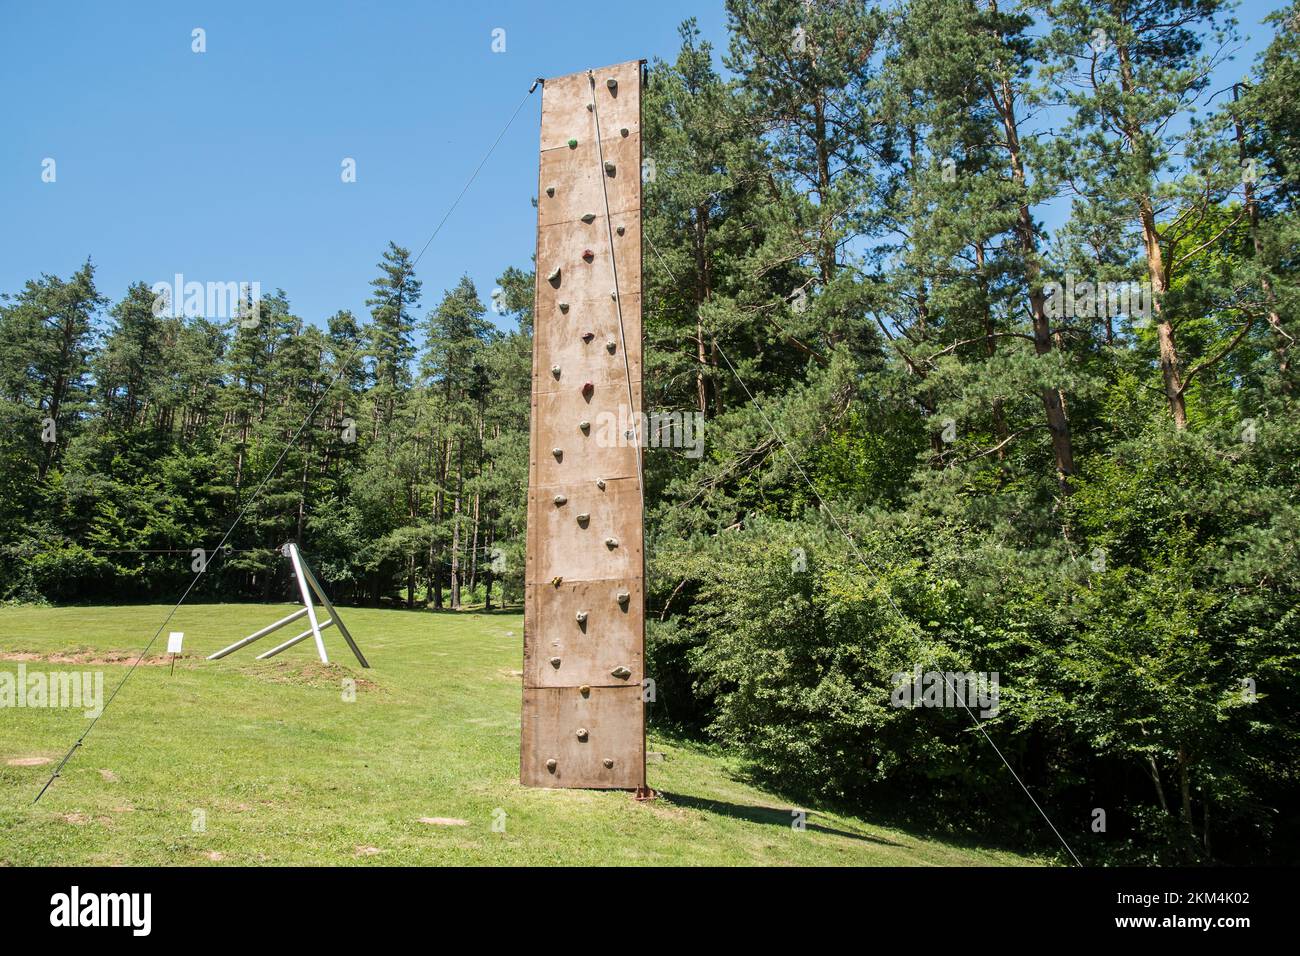 Artificial rock climbing wall outdoor on mountain meadow Stock Photo